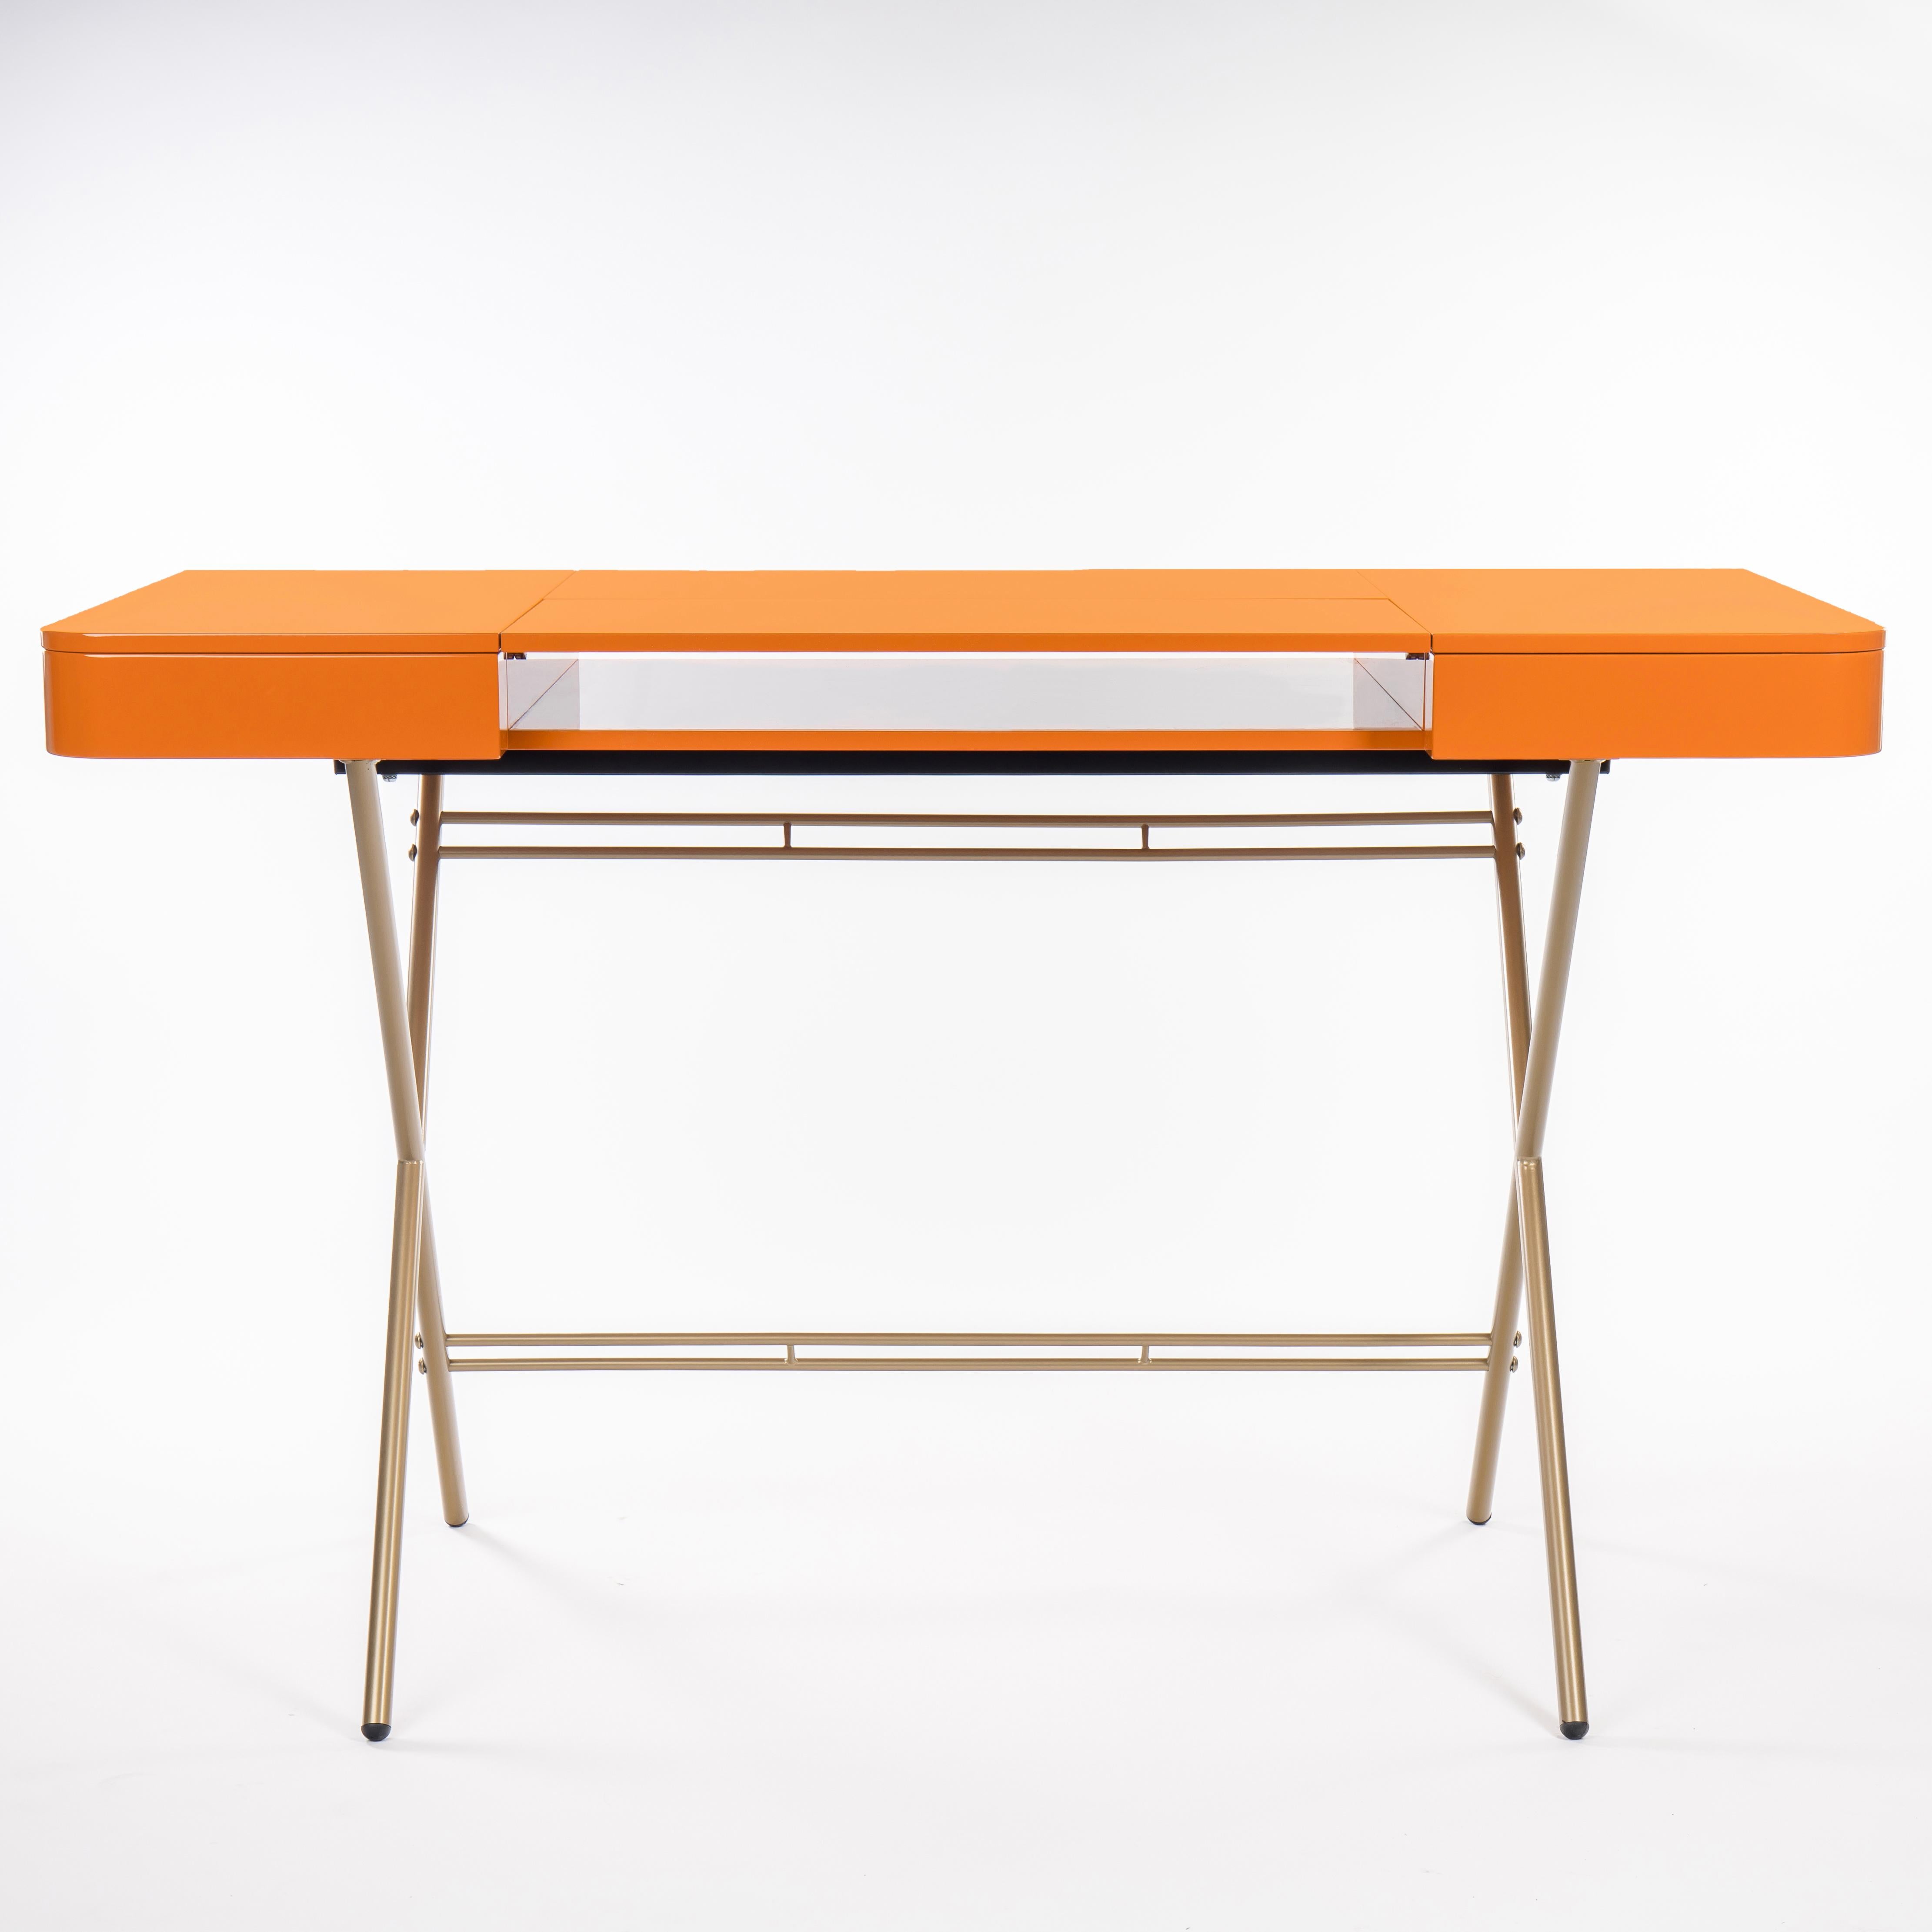 Der Schreibtisch Cosimo wurde 2017 von dem Architekten Marco Zanuso Jr. für die französische Luxusmöbelmarke Adentro Paris entworfen. Die mittlere Platte des Schreibtisches lässt sich zurückklappen, um ein verstecktes Regal darunter freizugeben, und